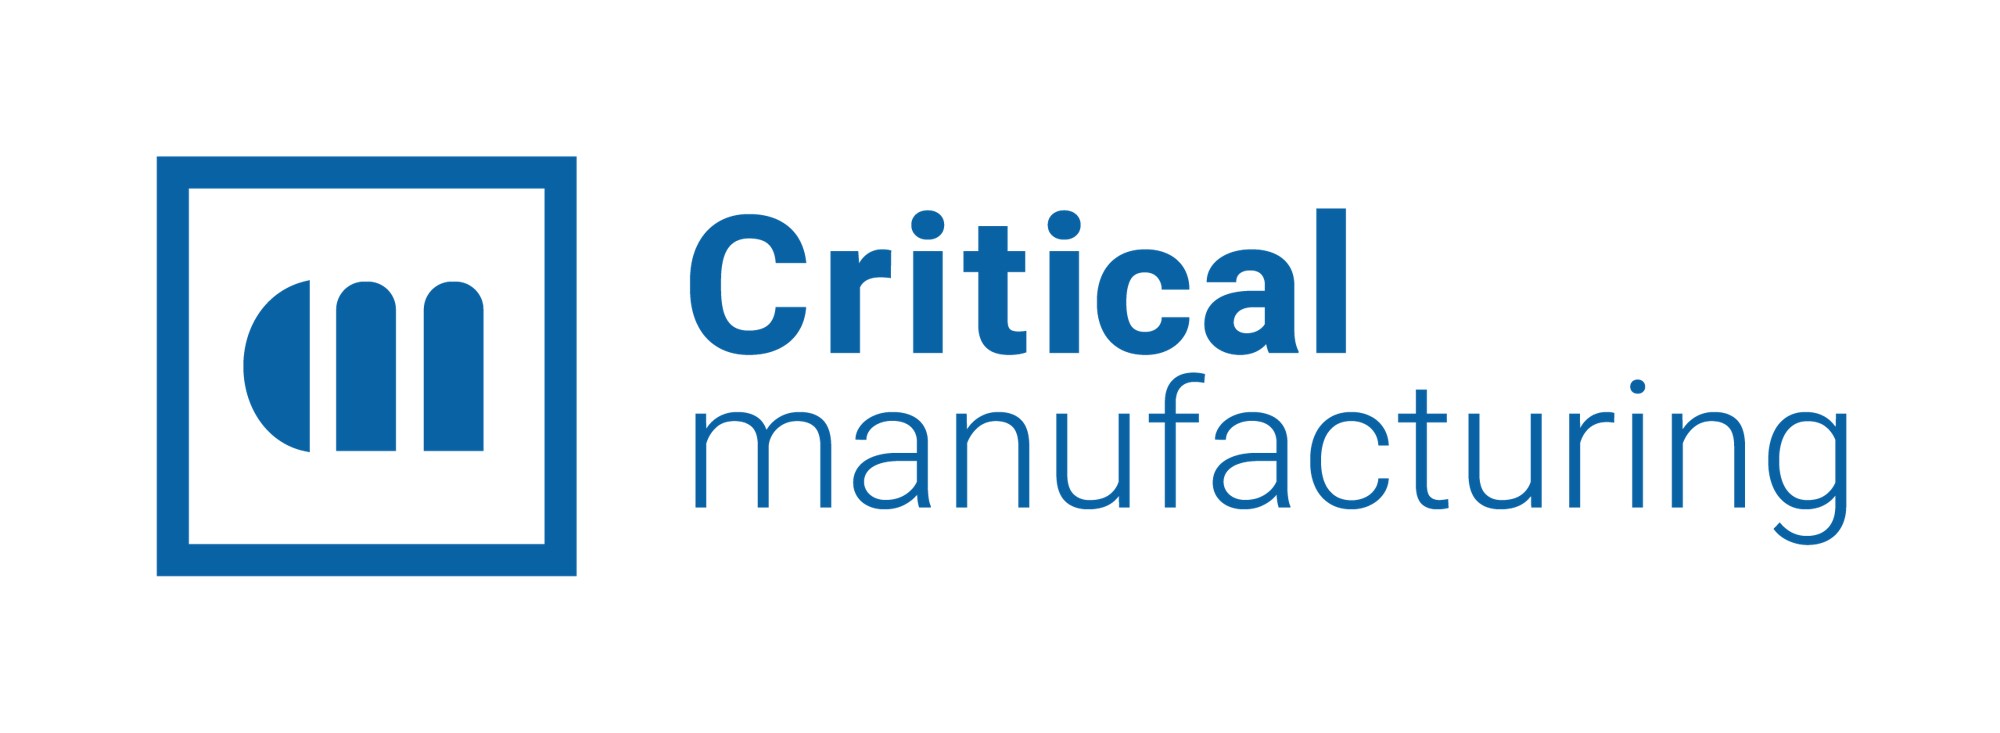 Critical Manufacturing Deutschland GmbH